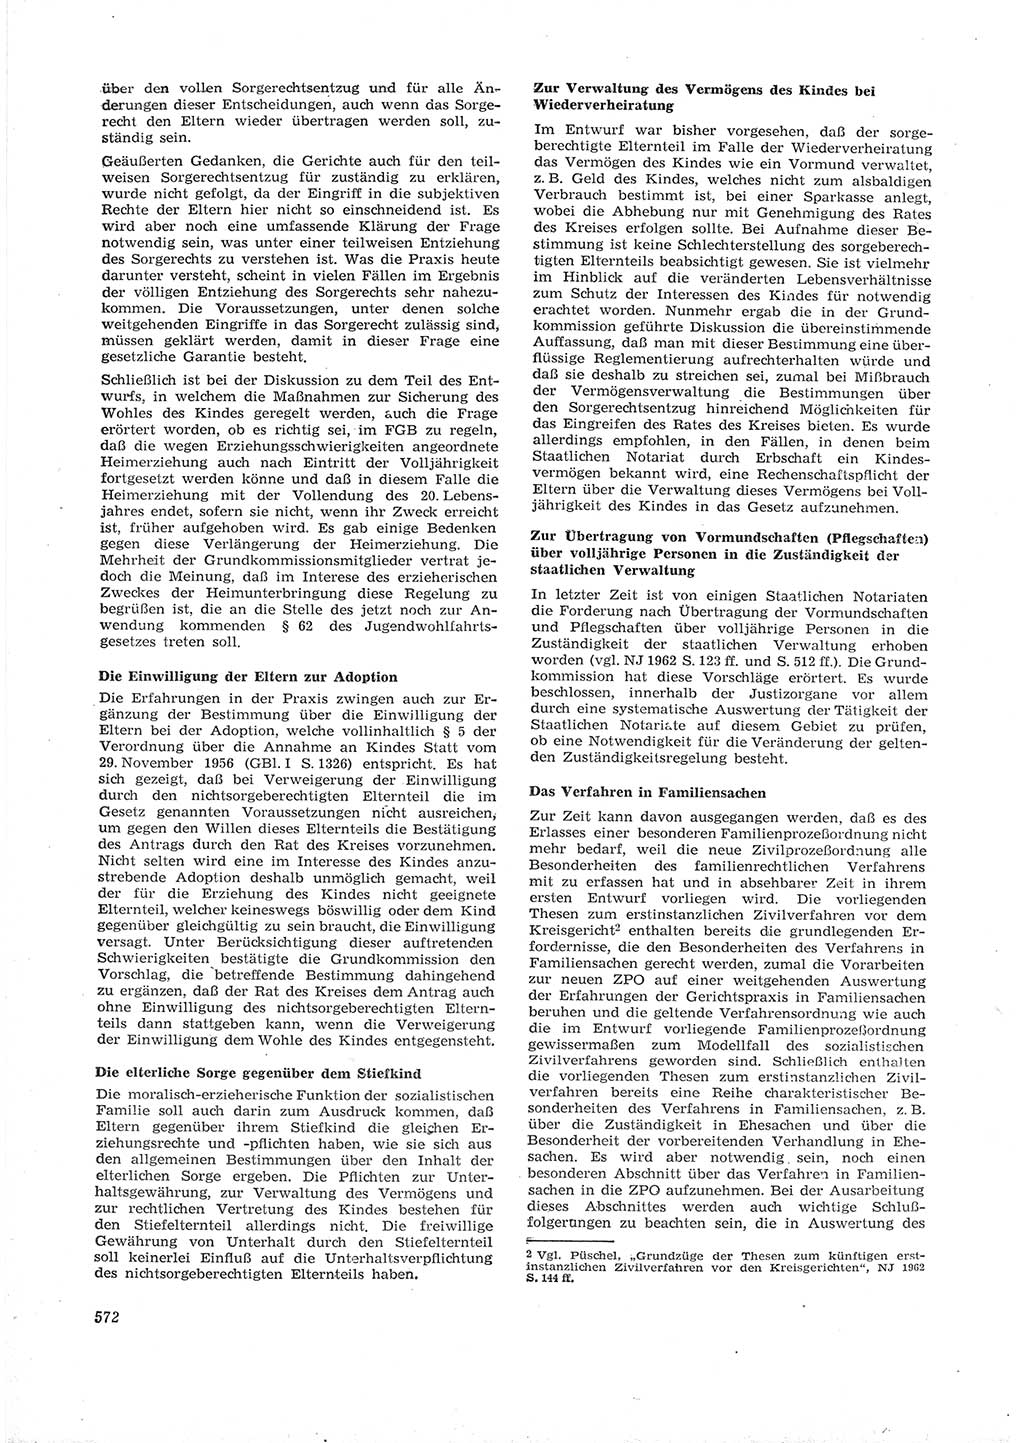 Neue Justiz (NJ), Zeitschrift für Recht und Rechtswissenschaft [Deutsche Demokratische Republik (DDR)], 16. Jahrgang 1962, Seite 572 (NJ DDR 1962, S. 572)